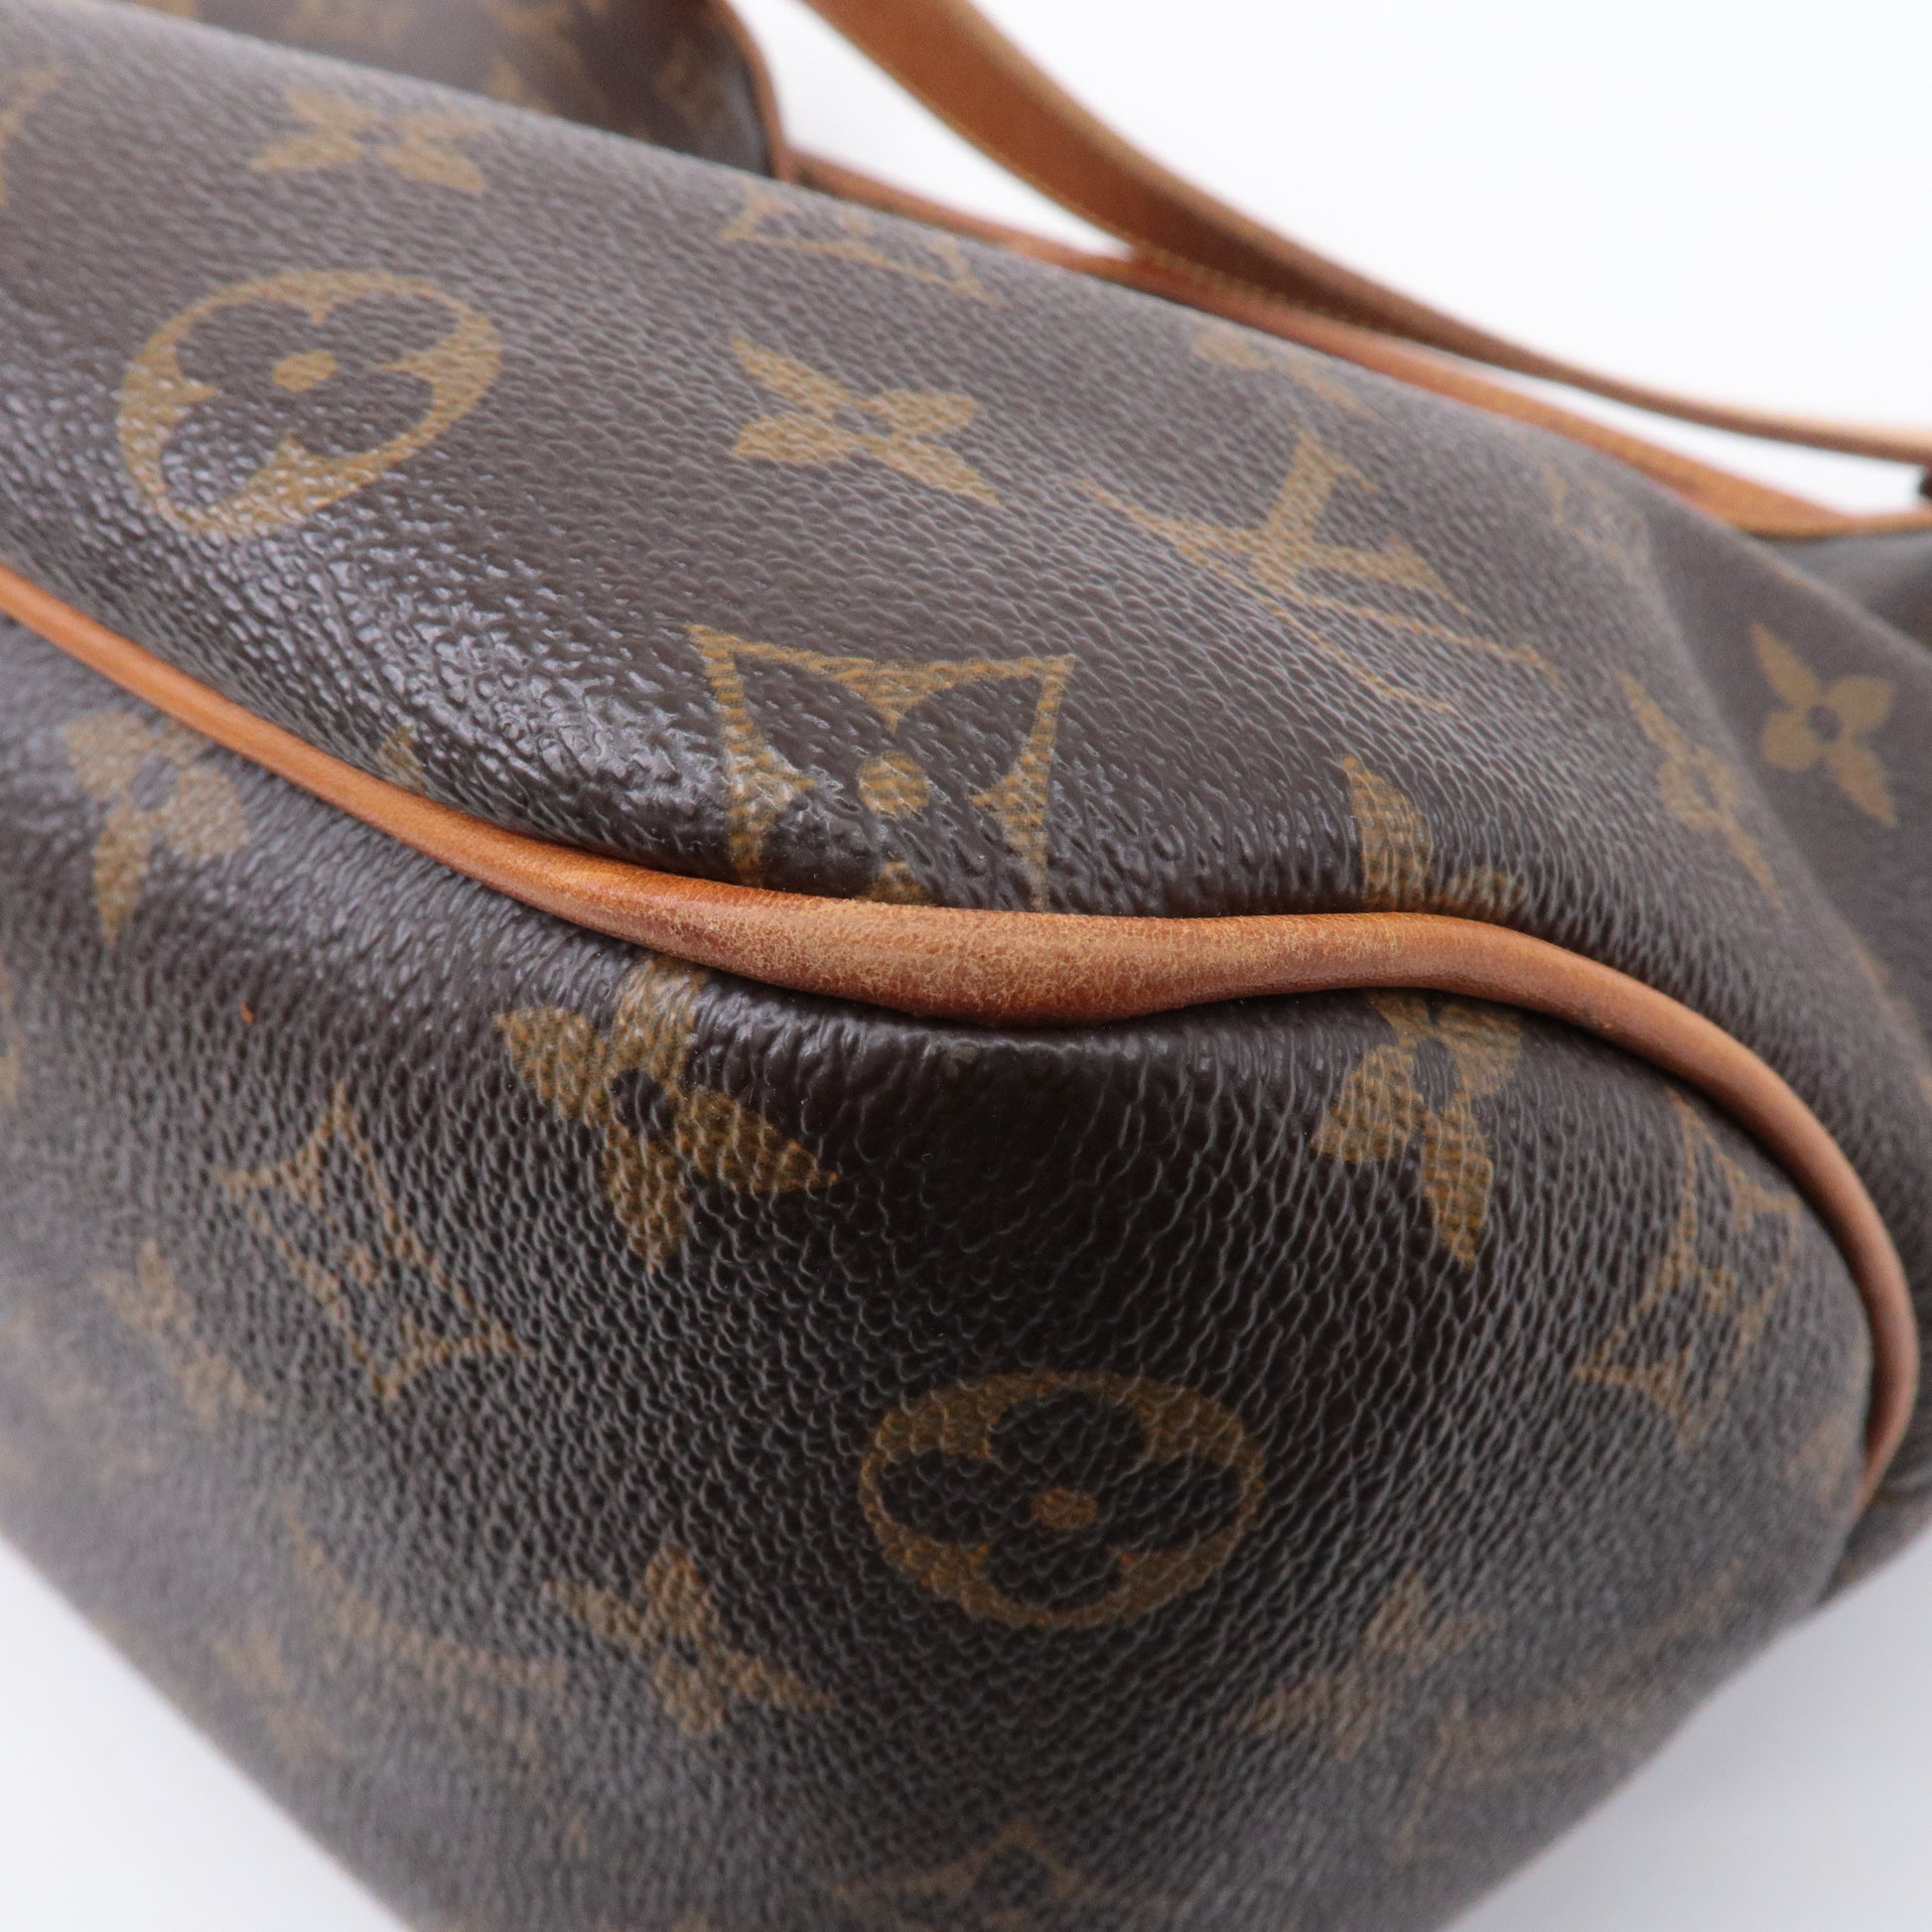 Louis Vuitton LV Vintage Delightful PM Shoulder Tote Bag, Luxury